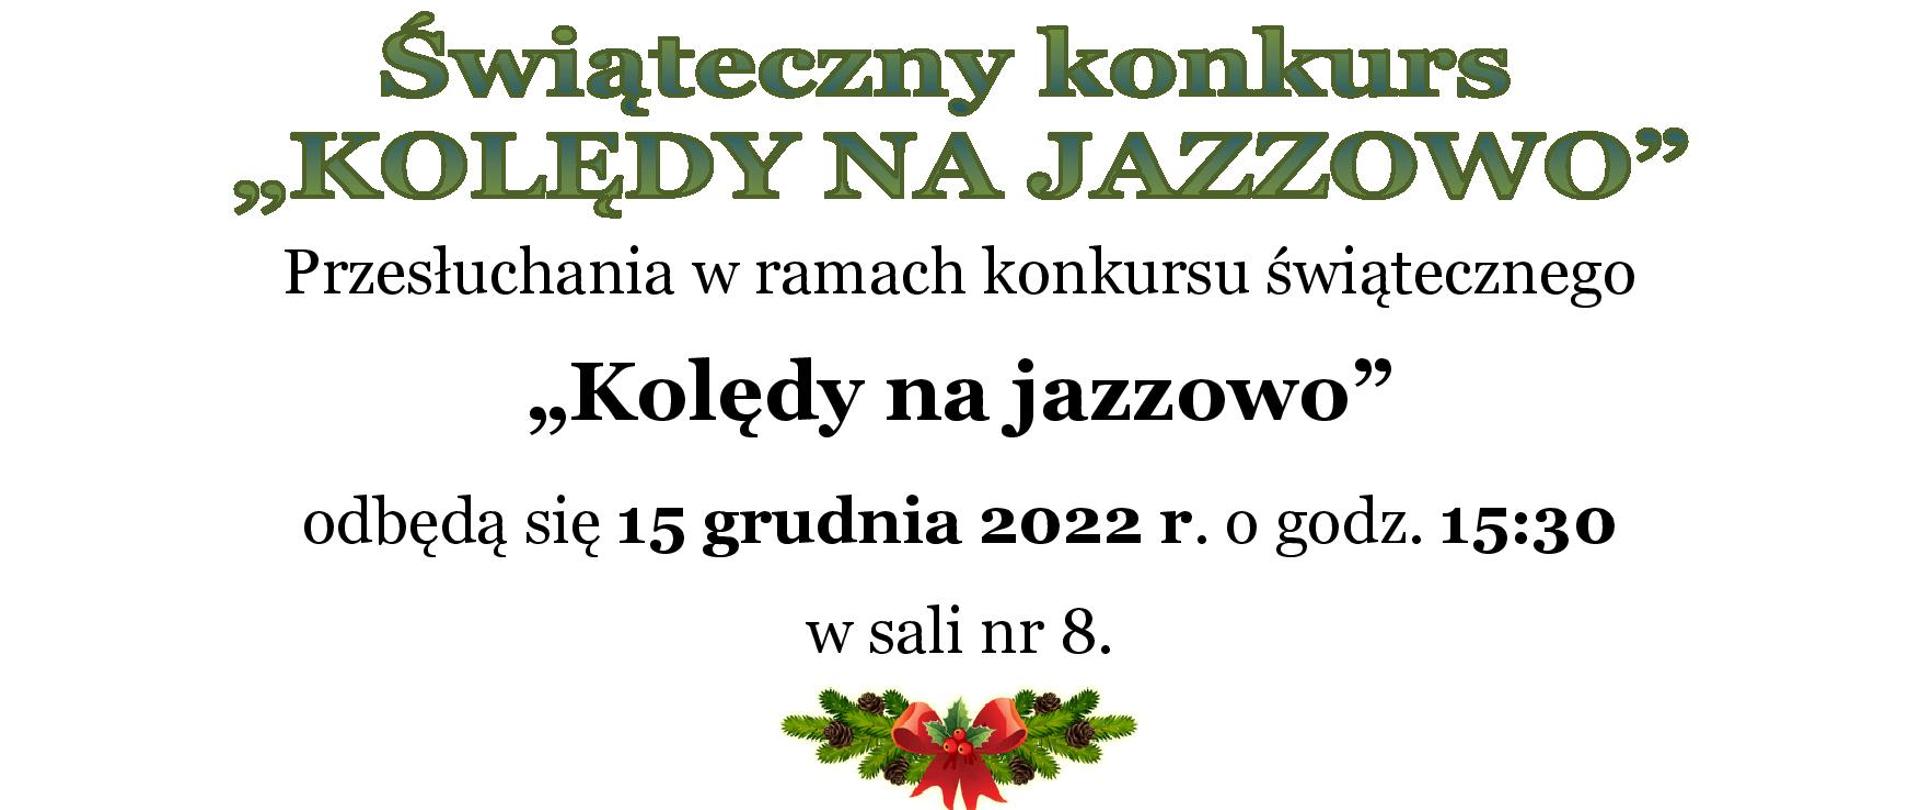 Ogłoszenie przedstawia informacje dot. Świątecznego konkursu "Kolędy na jazzowo", który odbędzie się 15 grudnia o godz. 15:30 . Poniżej treści znajduje się świąteczny stroik z czerwoną kokardą. 